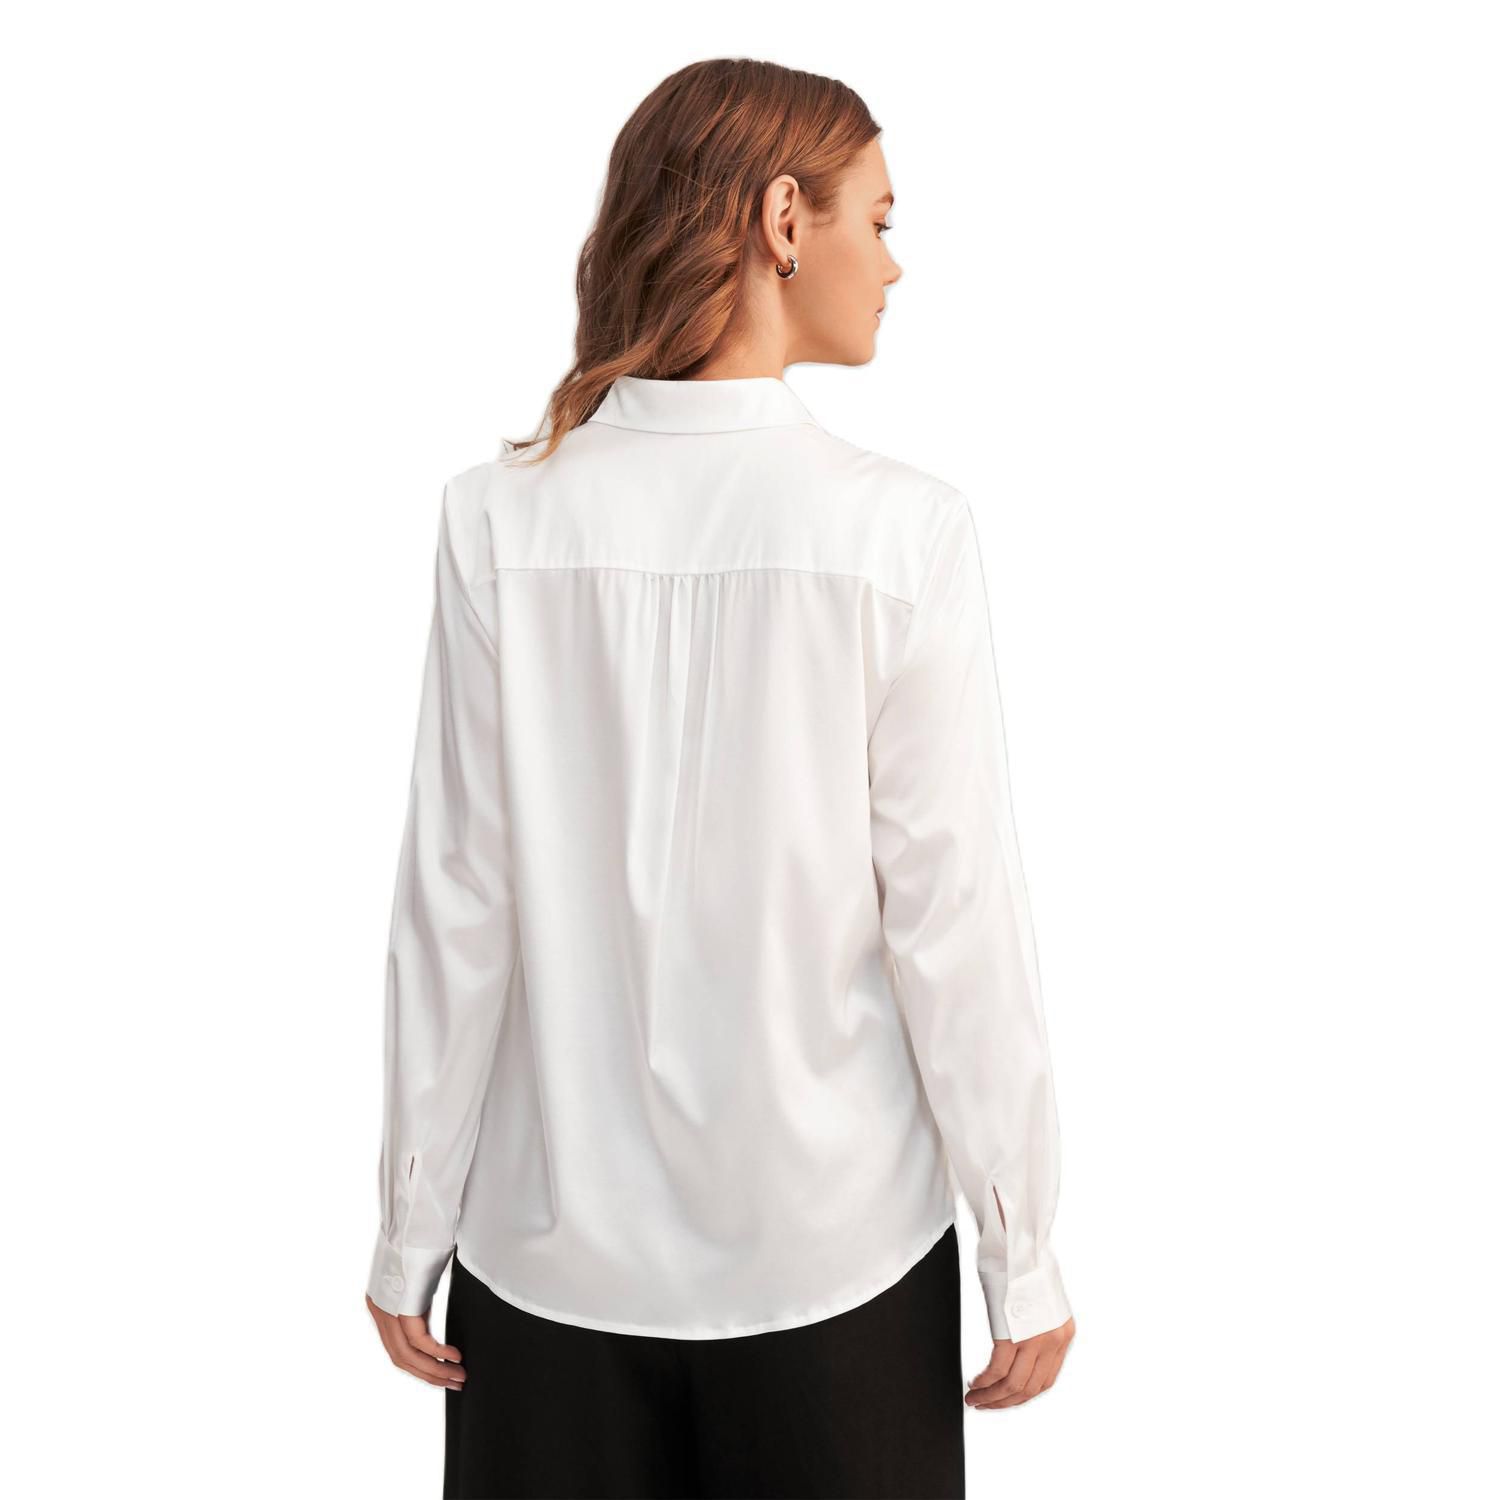 LILYSILK Женская шелковая блузка с длинными рукавами и воротником Lilysilk, серебряный